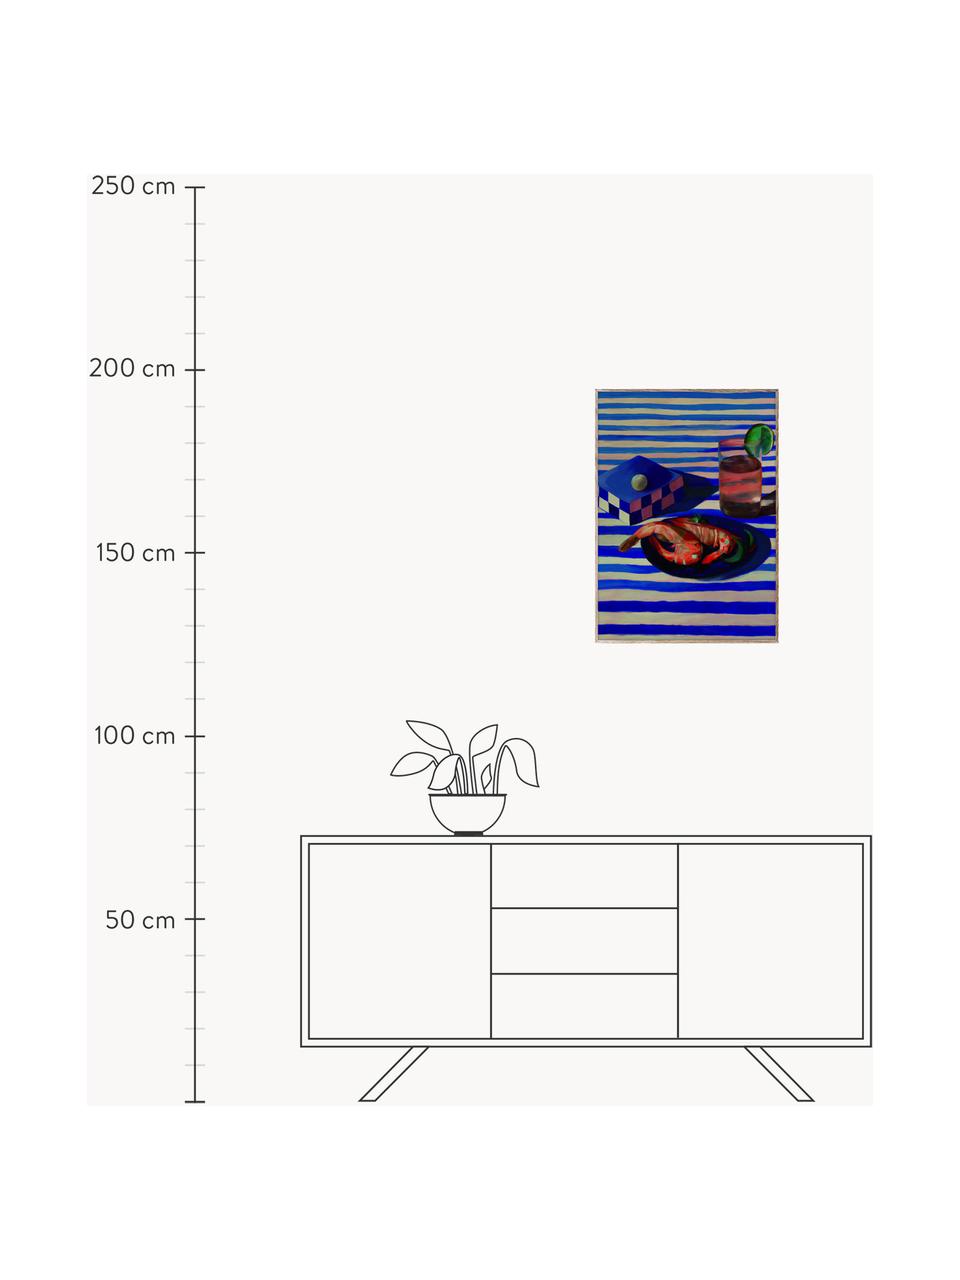 Poster Shrimp & Stripes, 210 g mattes Hahnemühle-Papier, Digitaldruck mit 10 UV-beständigen Farben, Royalblau, Korallrot, B 50 x H 70 cm